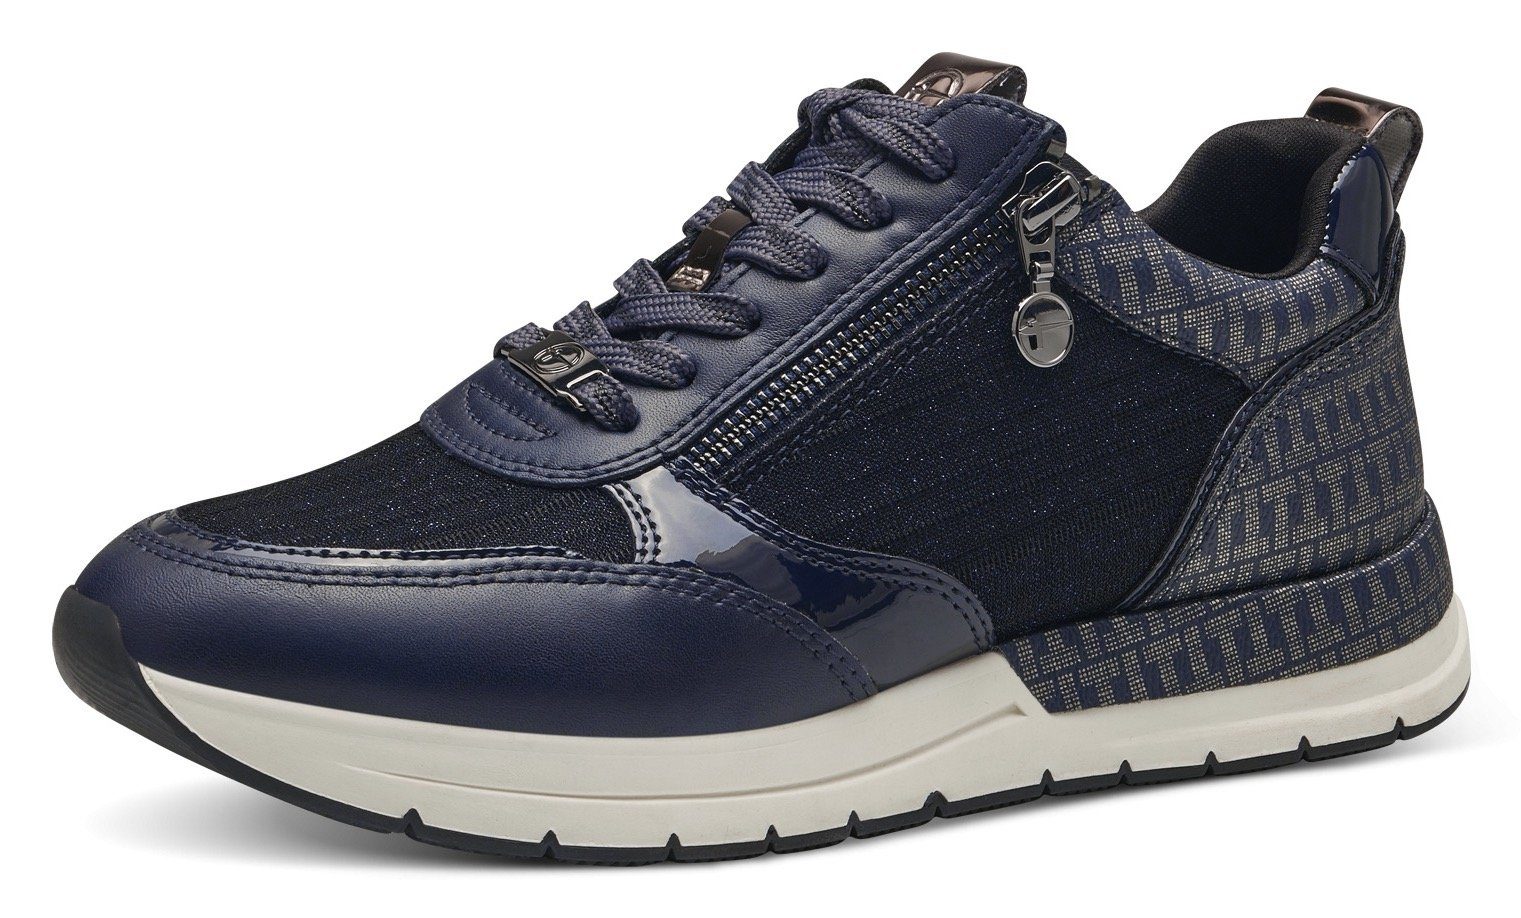 Tamaris Sneaker mit trendigen Metallic-Details navy kombiniert